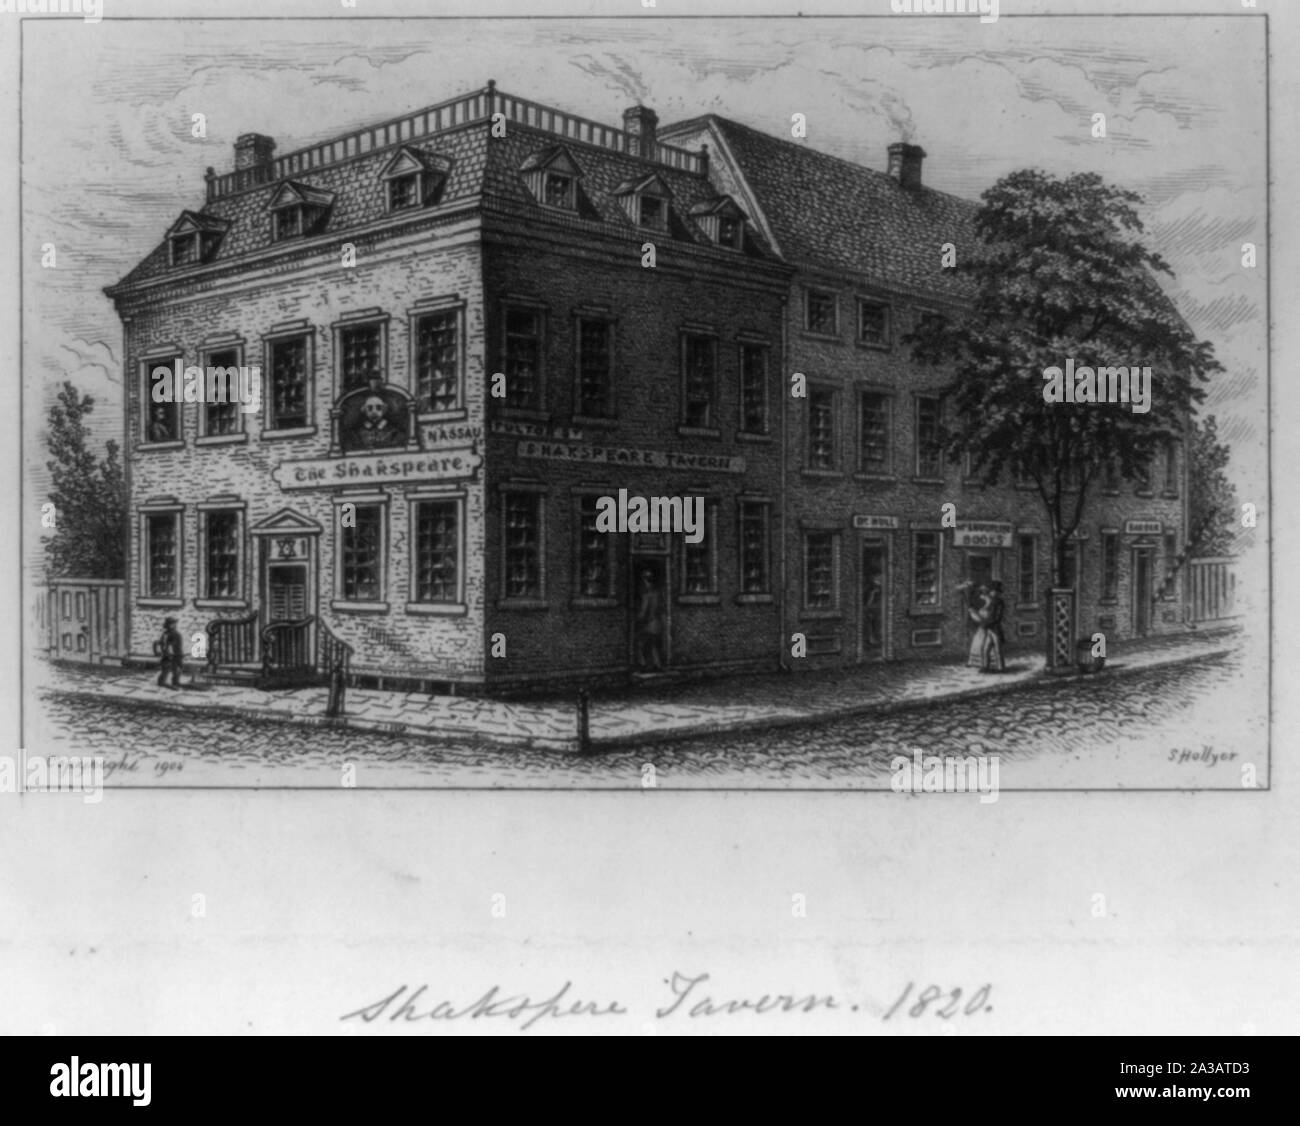 Shakespeare Taverne, 1820] / S. Hollyer Stockfoto